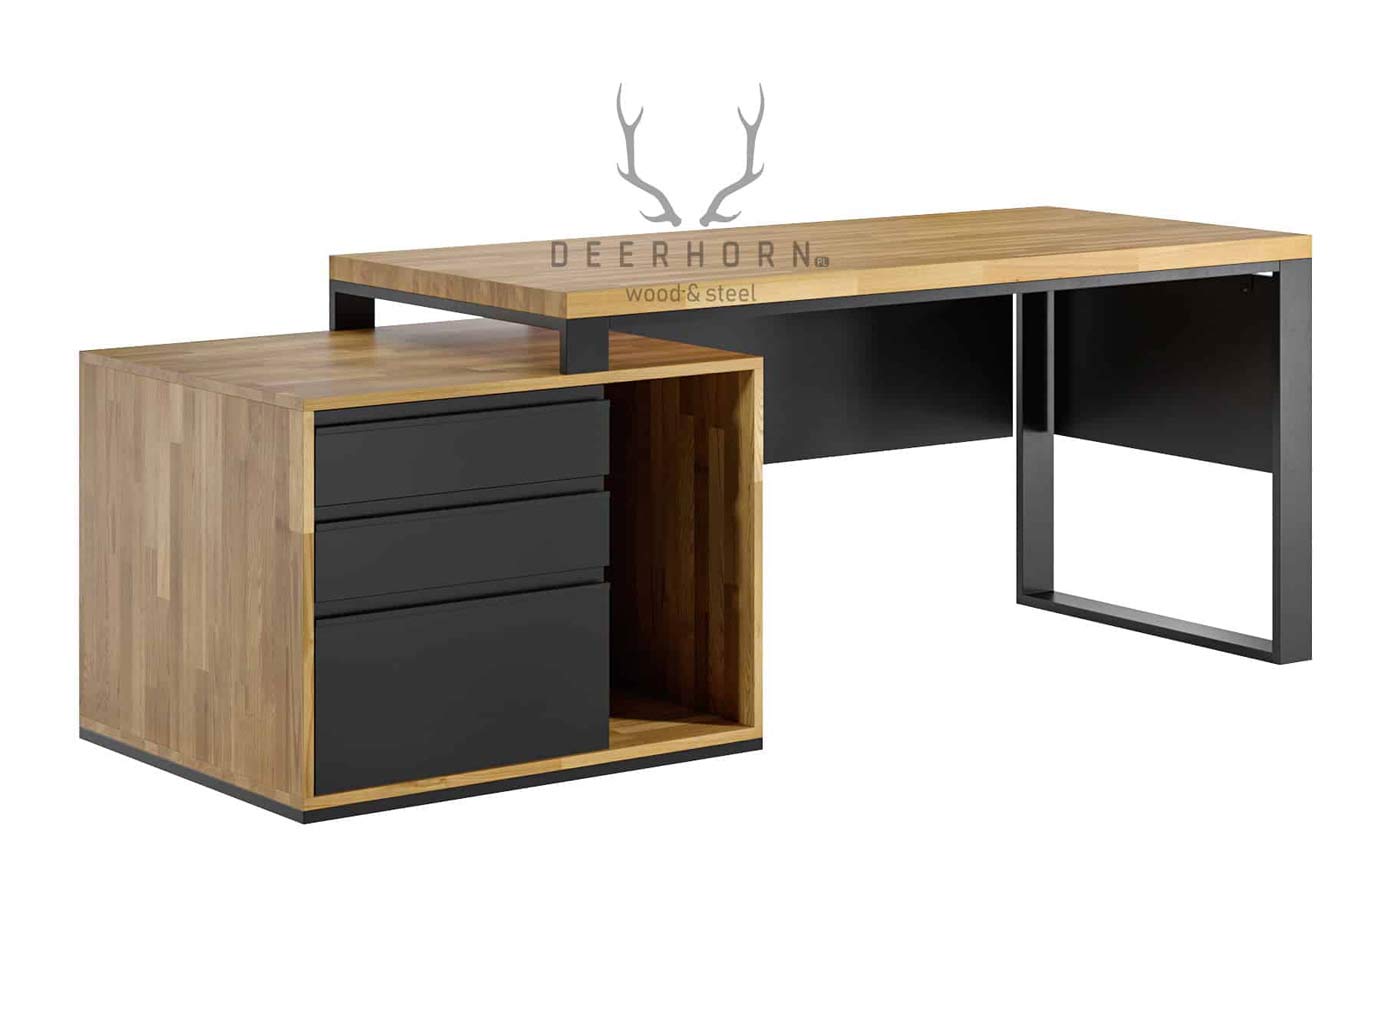 biurko loftowe z drewnianym blatem